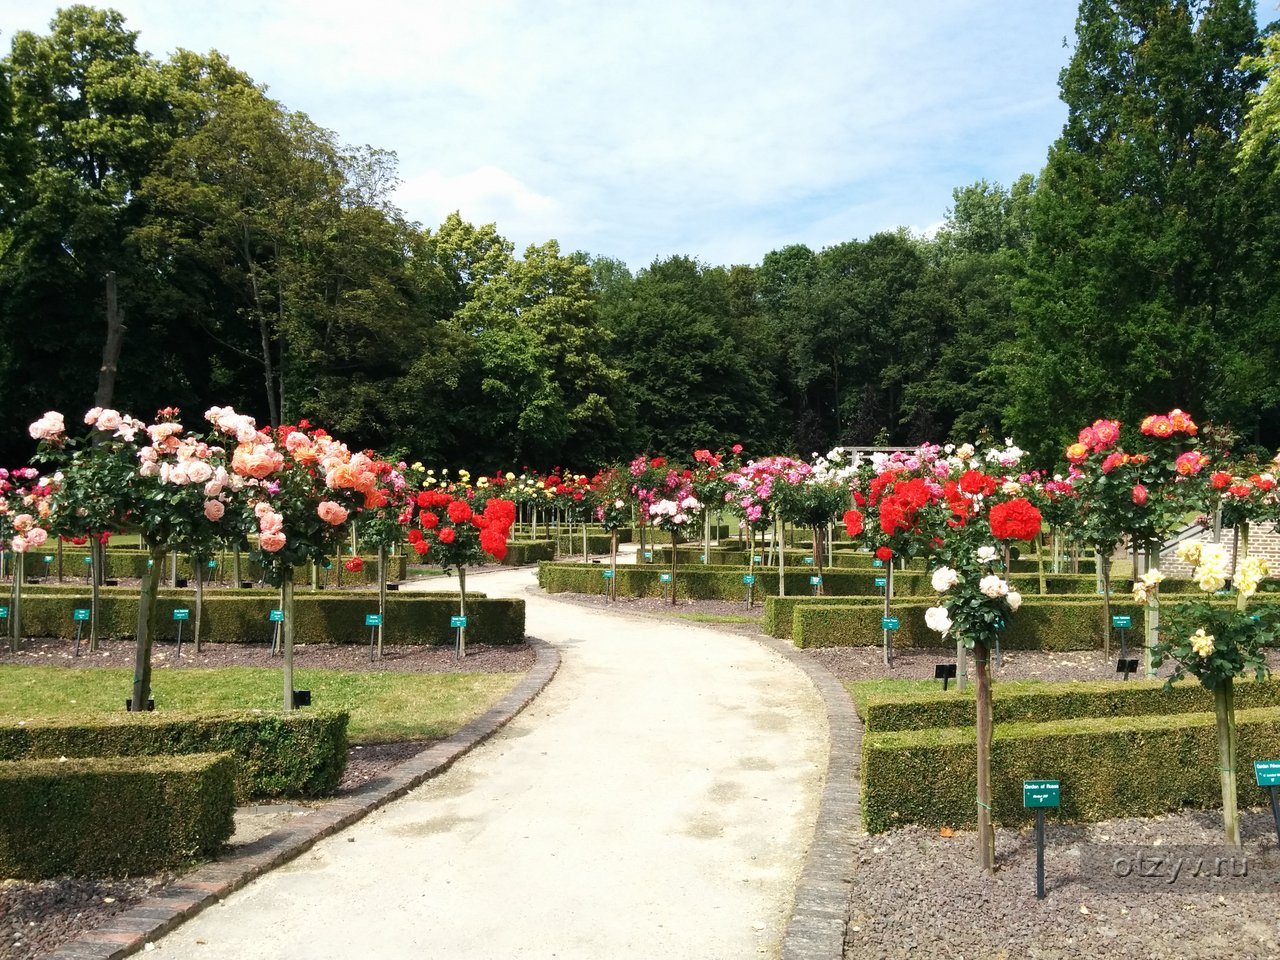 В сад роз 38. Розарий Coloma в Бельгии. Чеховский сад сорта роз. Тиргартен сад роз.